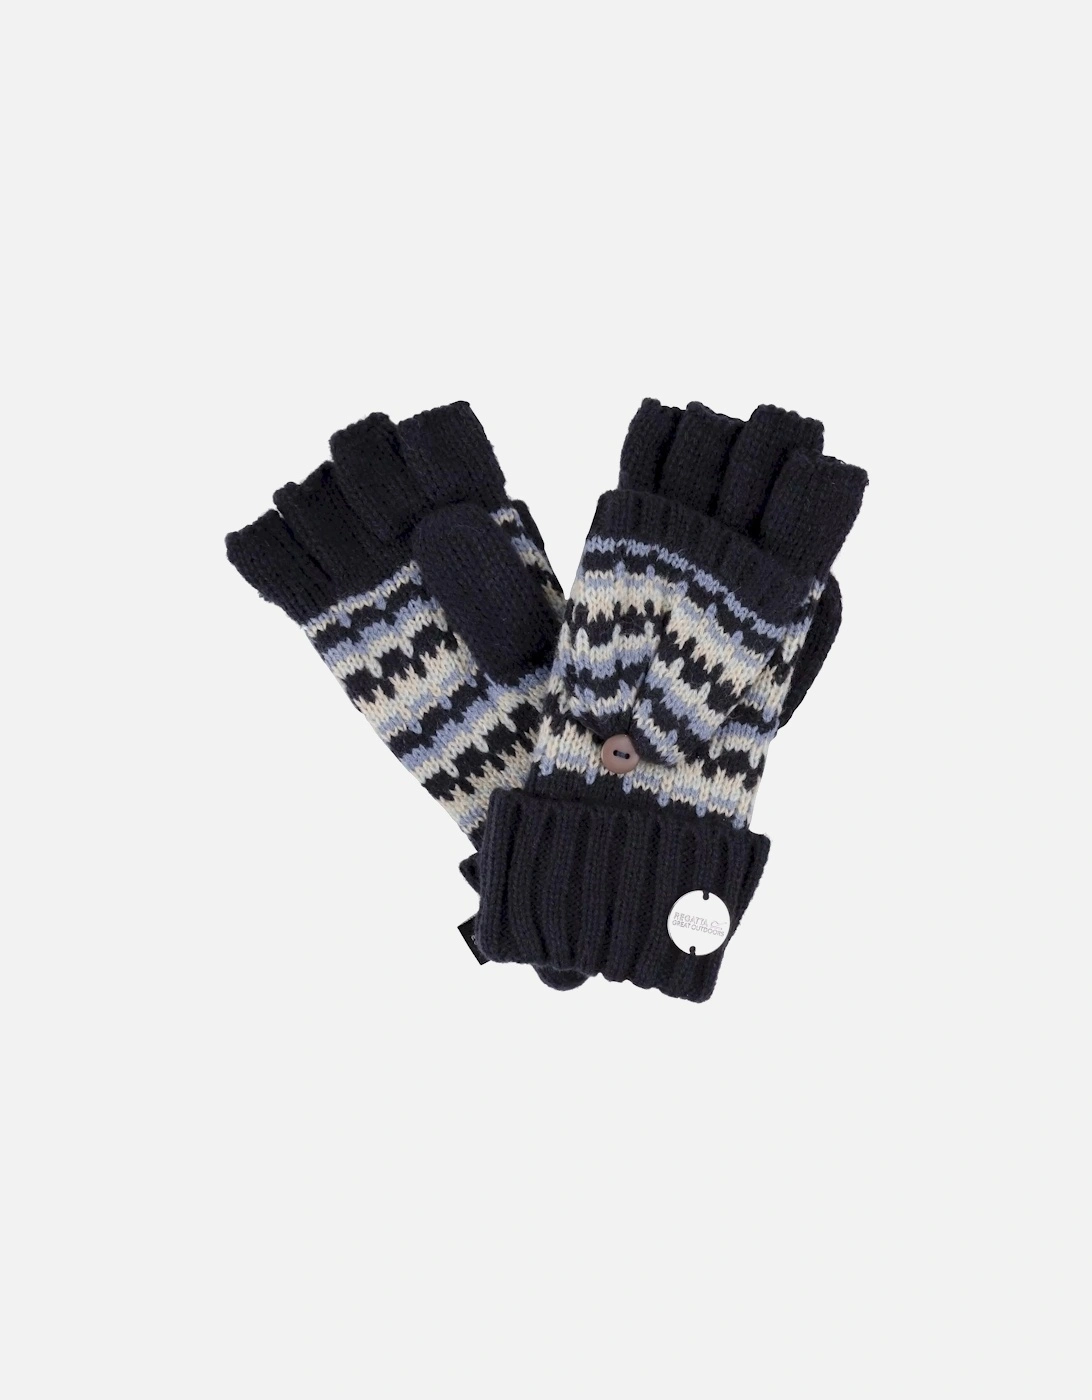 Childrens/Kids Baneberry Knitted Fingerless Gloves, 5 of 4